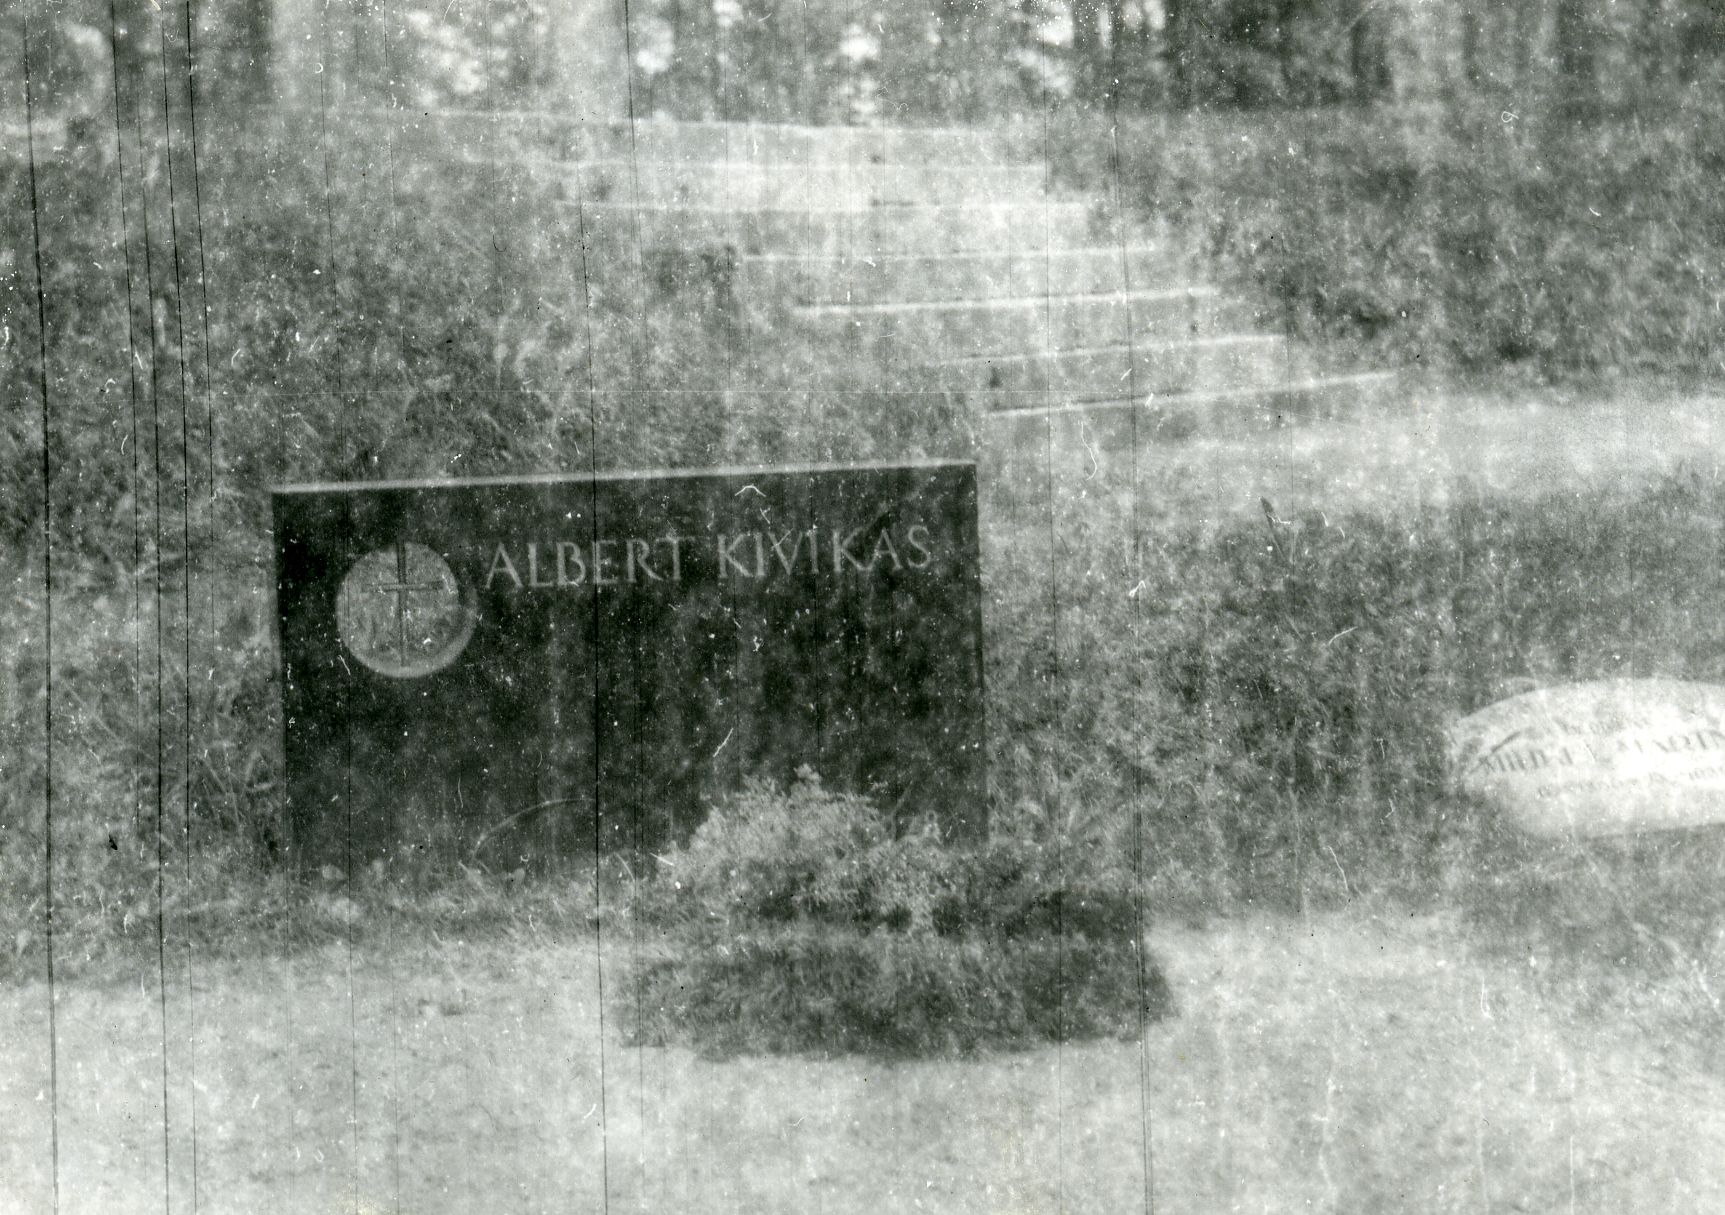 Kivikas, Albert's grave in Tallinn on the forest